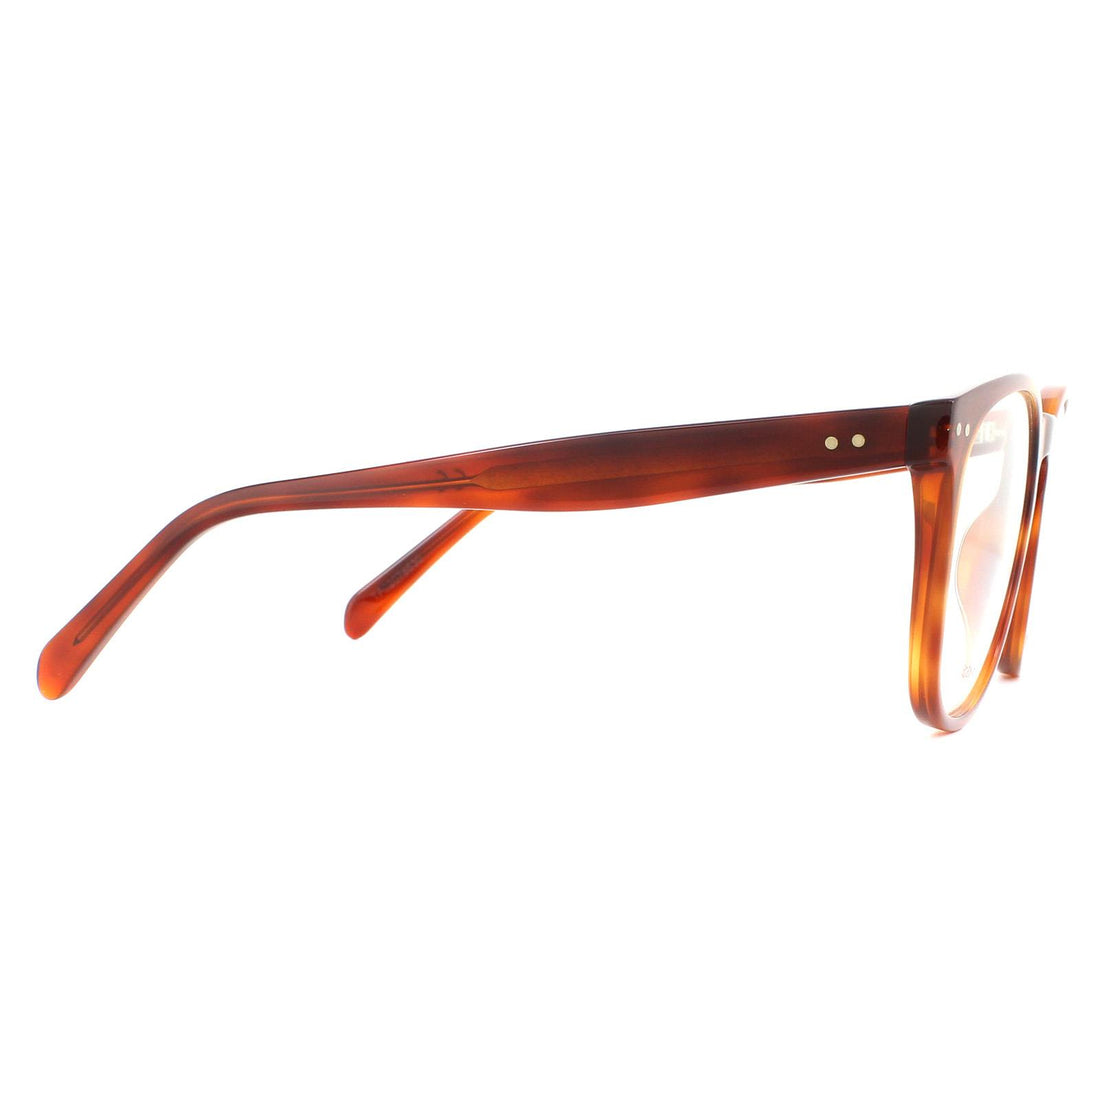 Celine CL50021I Glasses Frames